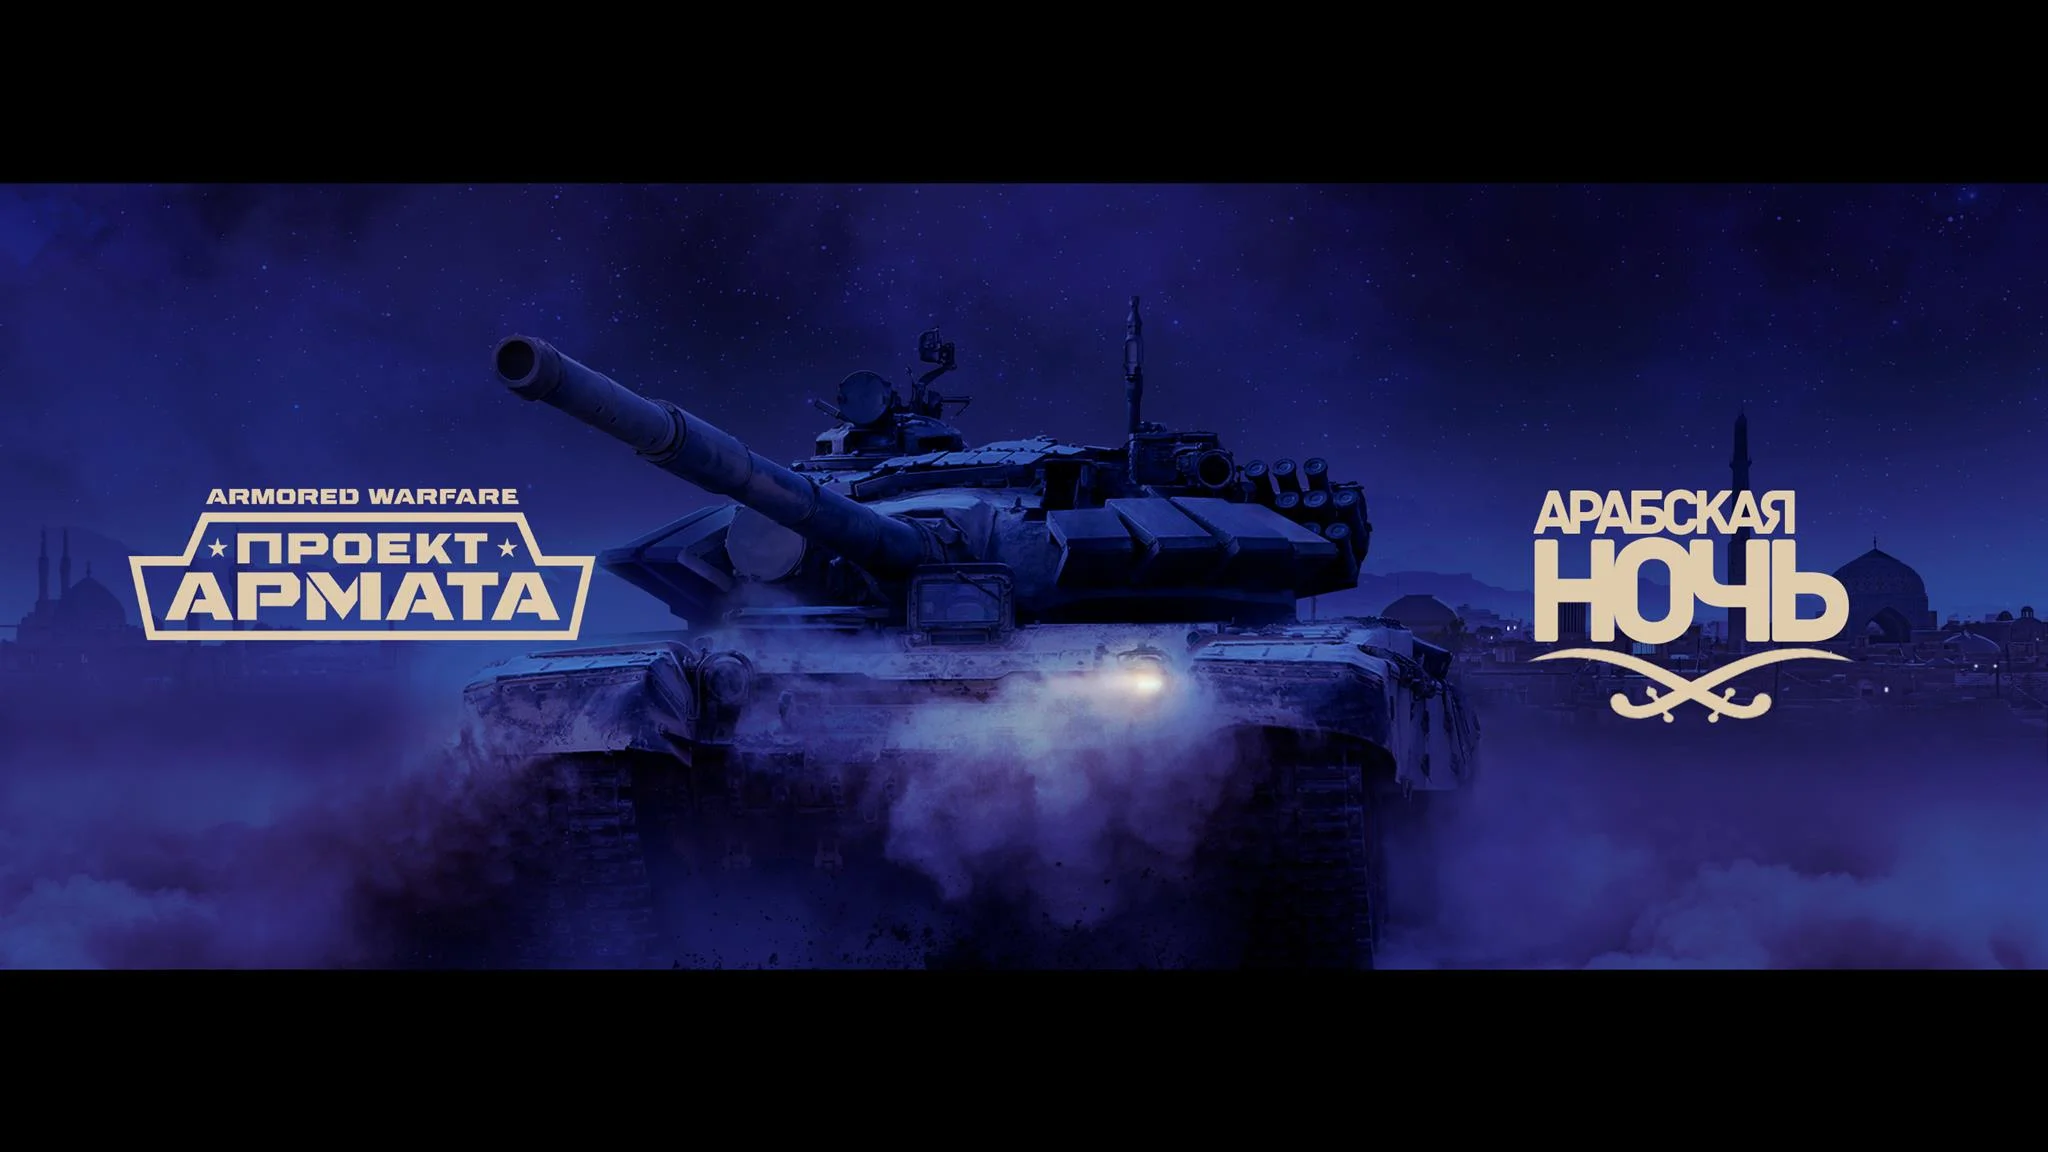 Второй сезон сюжетной кампании Armored Warfare получил название «Арабская ночь» - фото 1